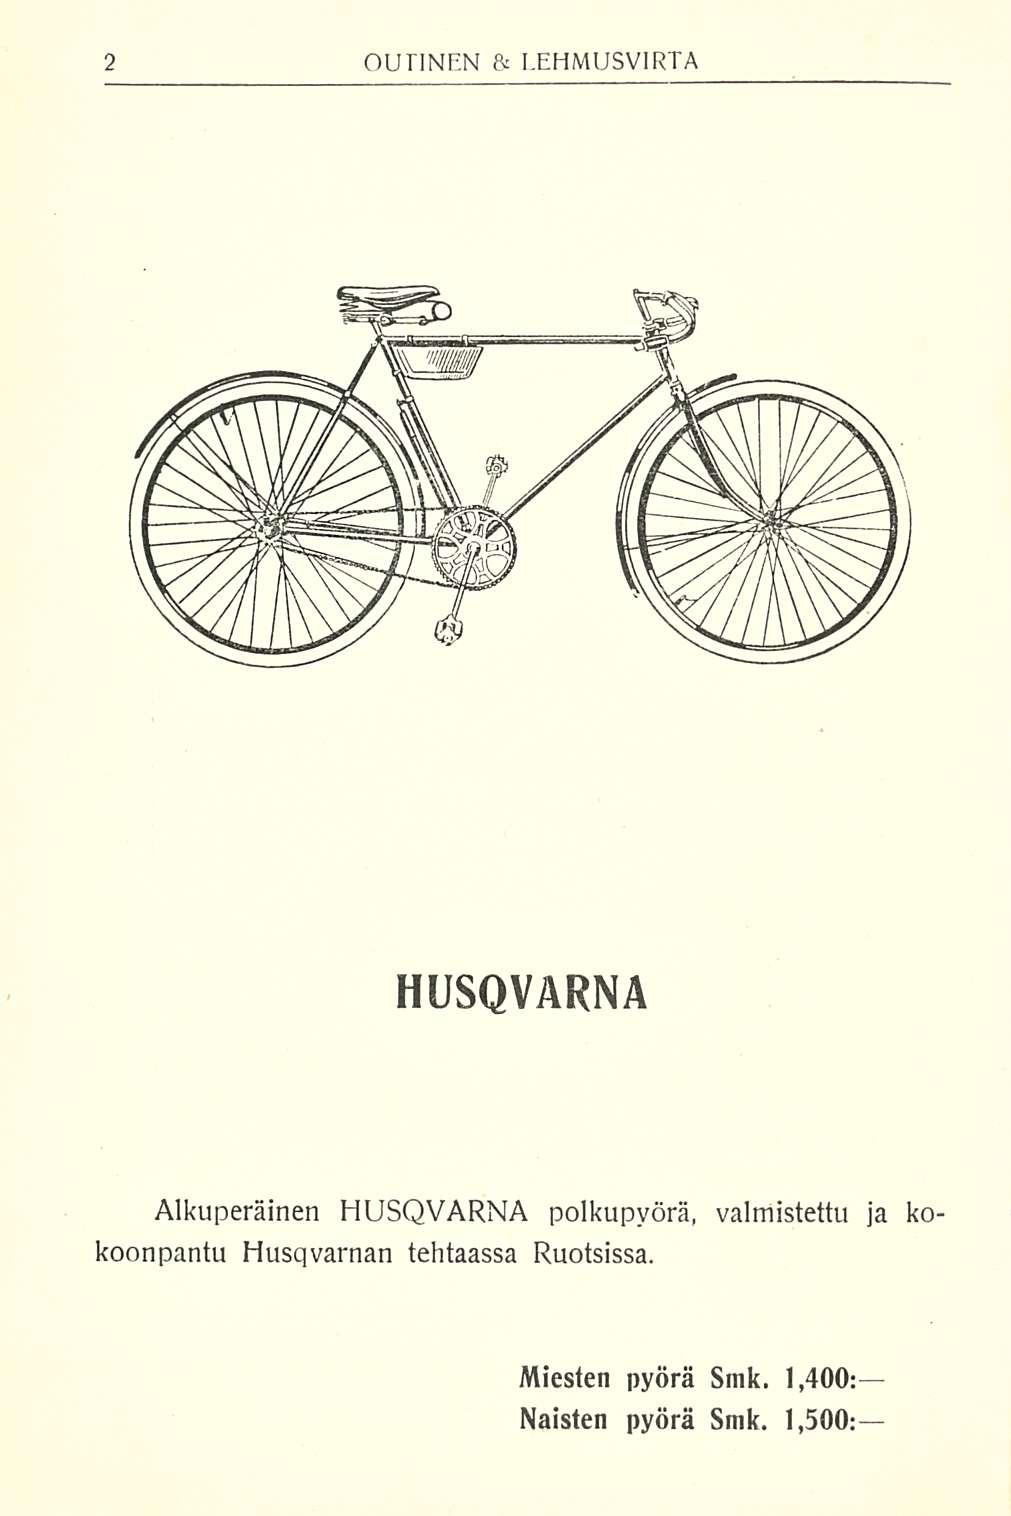 HUSQVARNA Alkuperäinen HUSQVARNA polkupyörä, valmistettu ja kokoonpantu